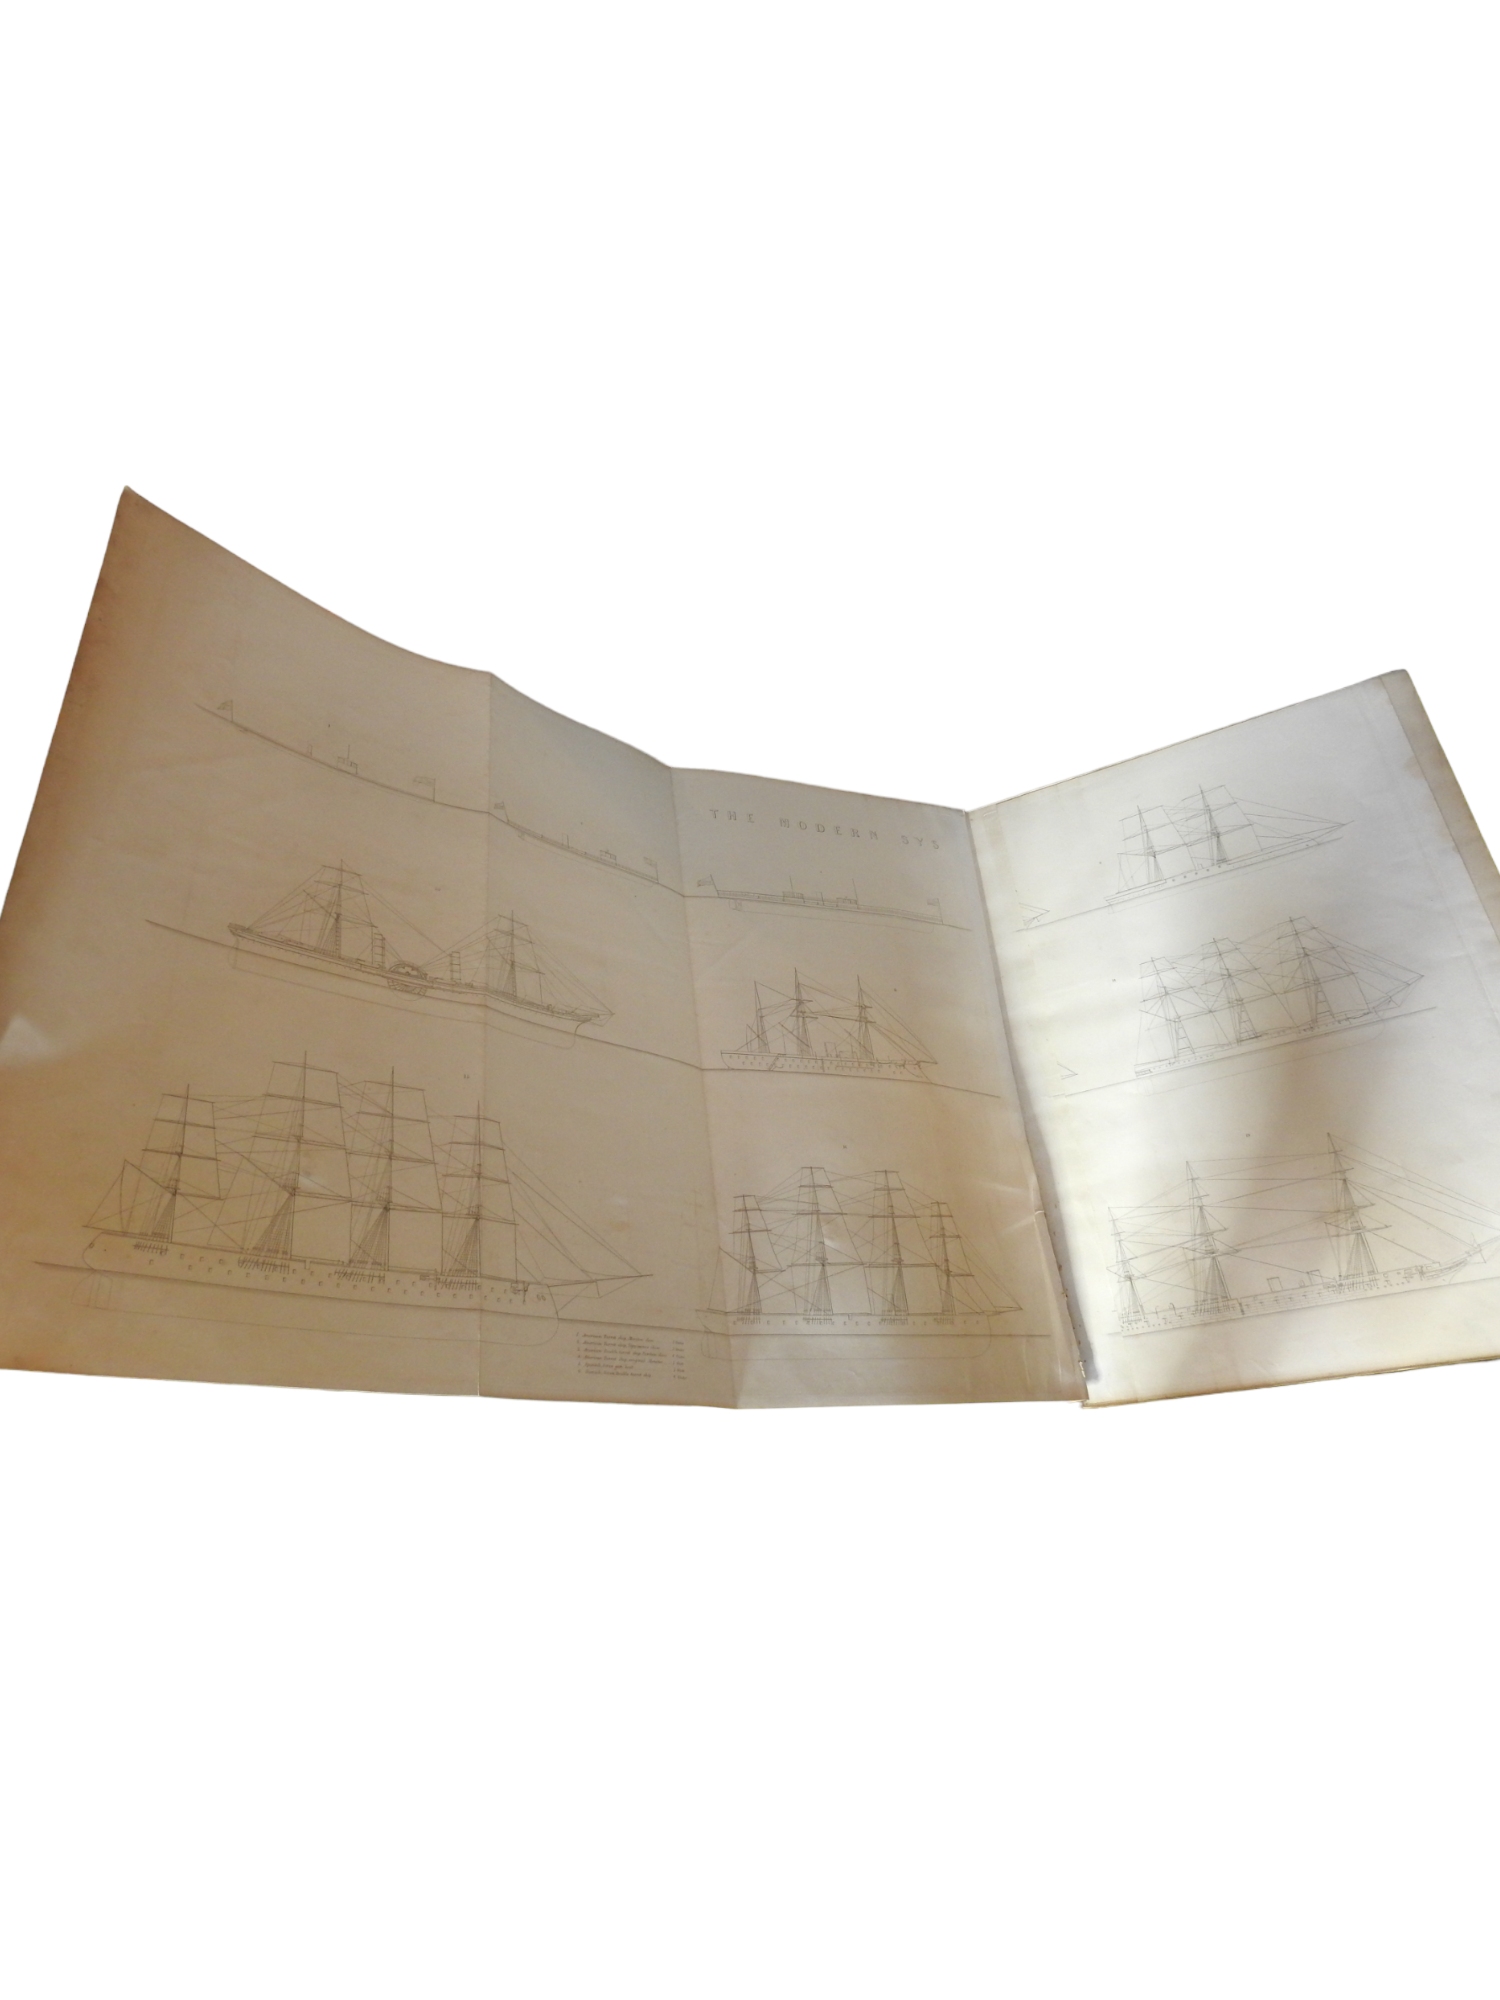 J. Scott Russell, Dreibändiges Werk The Modern System of Naval Architecture - Image 21 of 21